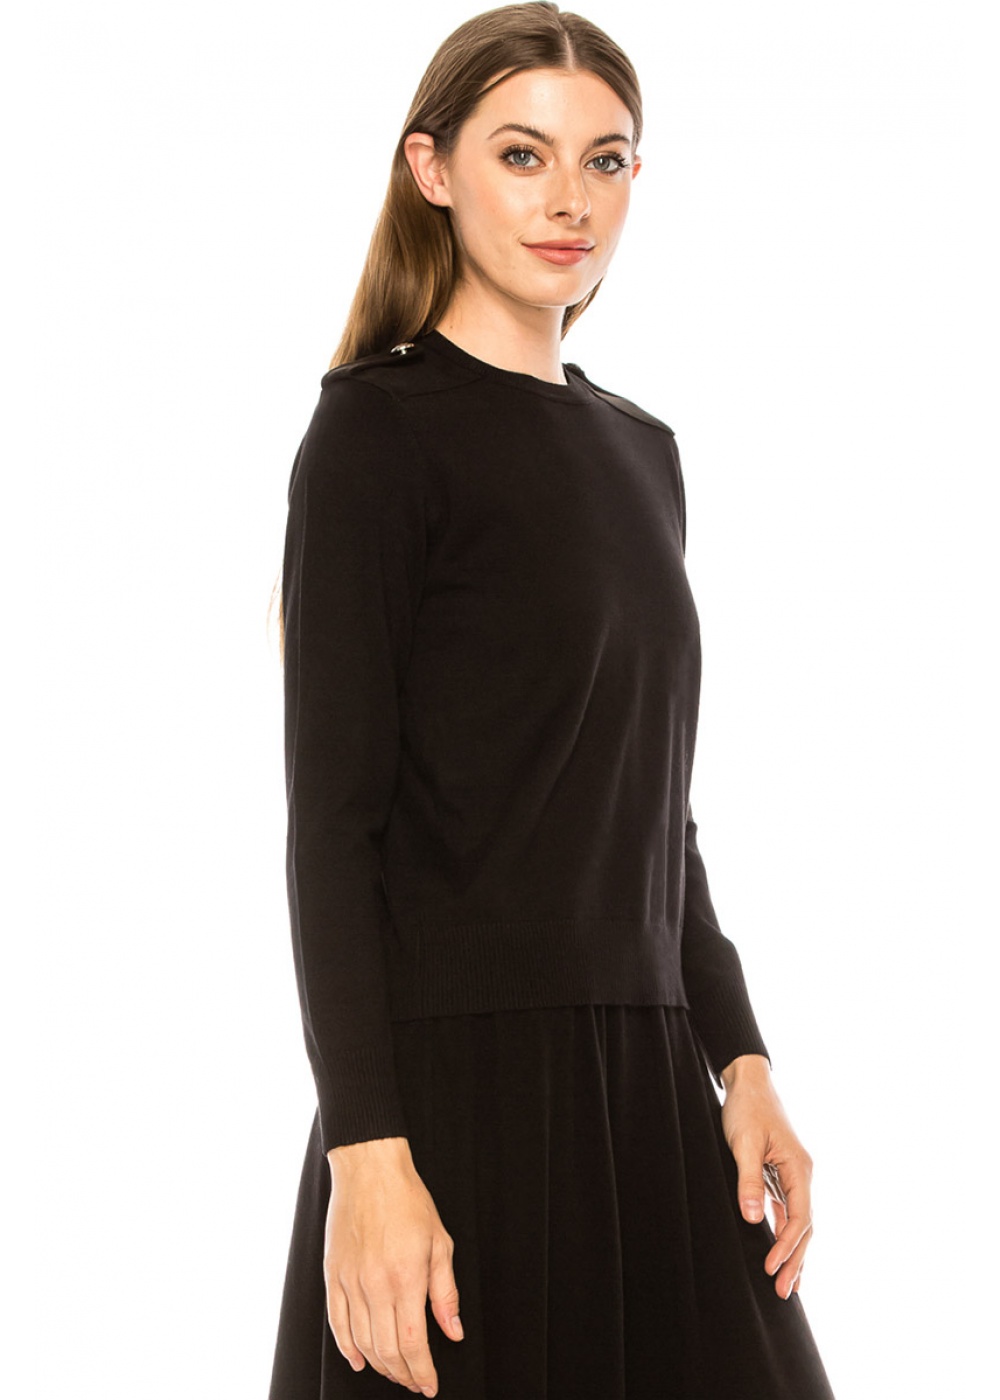 Epaulette basic sweater in black